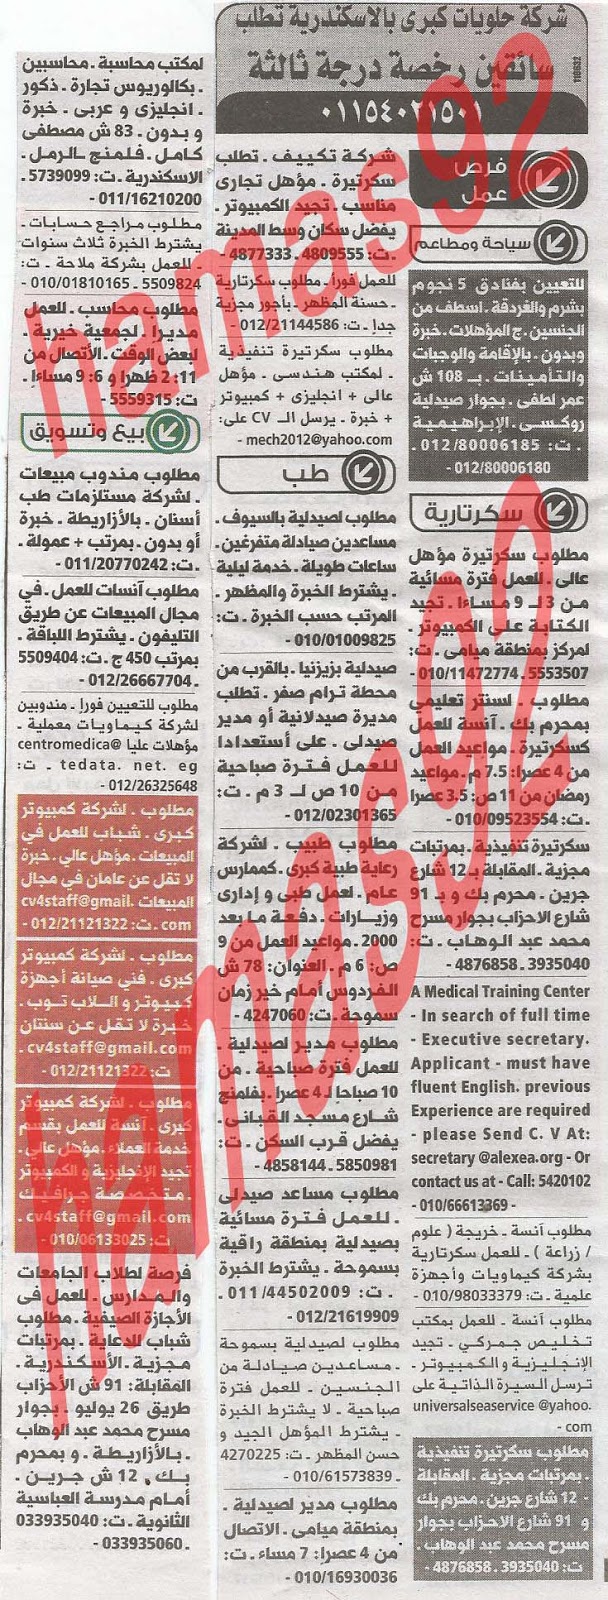 وظائف خالية فى جريدة الوسيط الاسكندرية الاثنين 22-07-2013 %D9%88+%D8%B3+%D8%B3+4